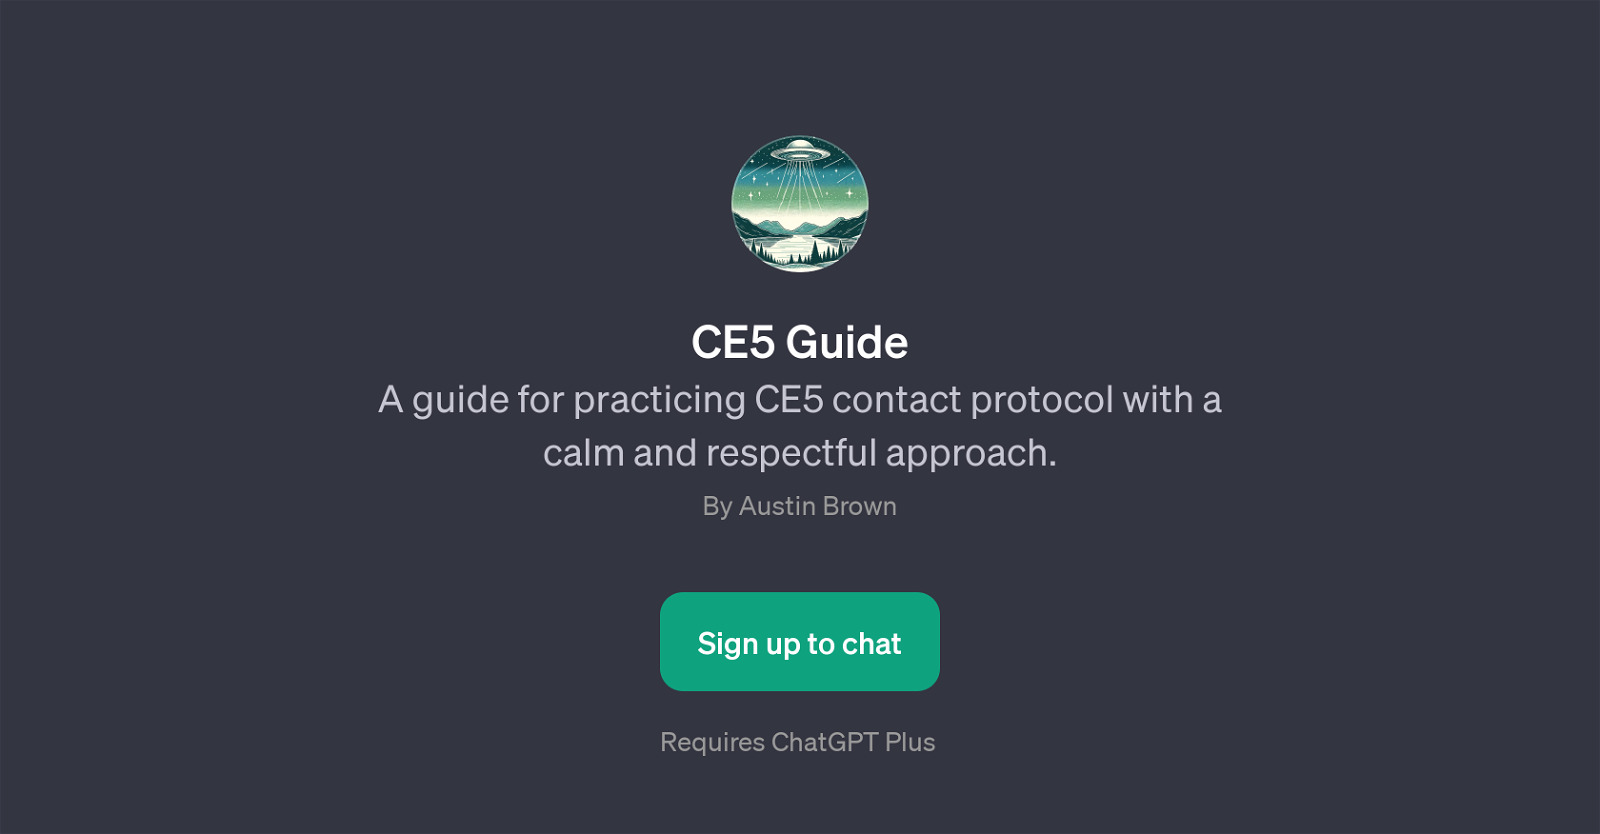 CE5 Guide website